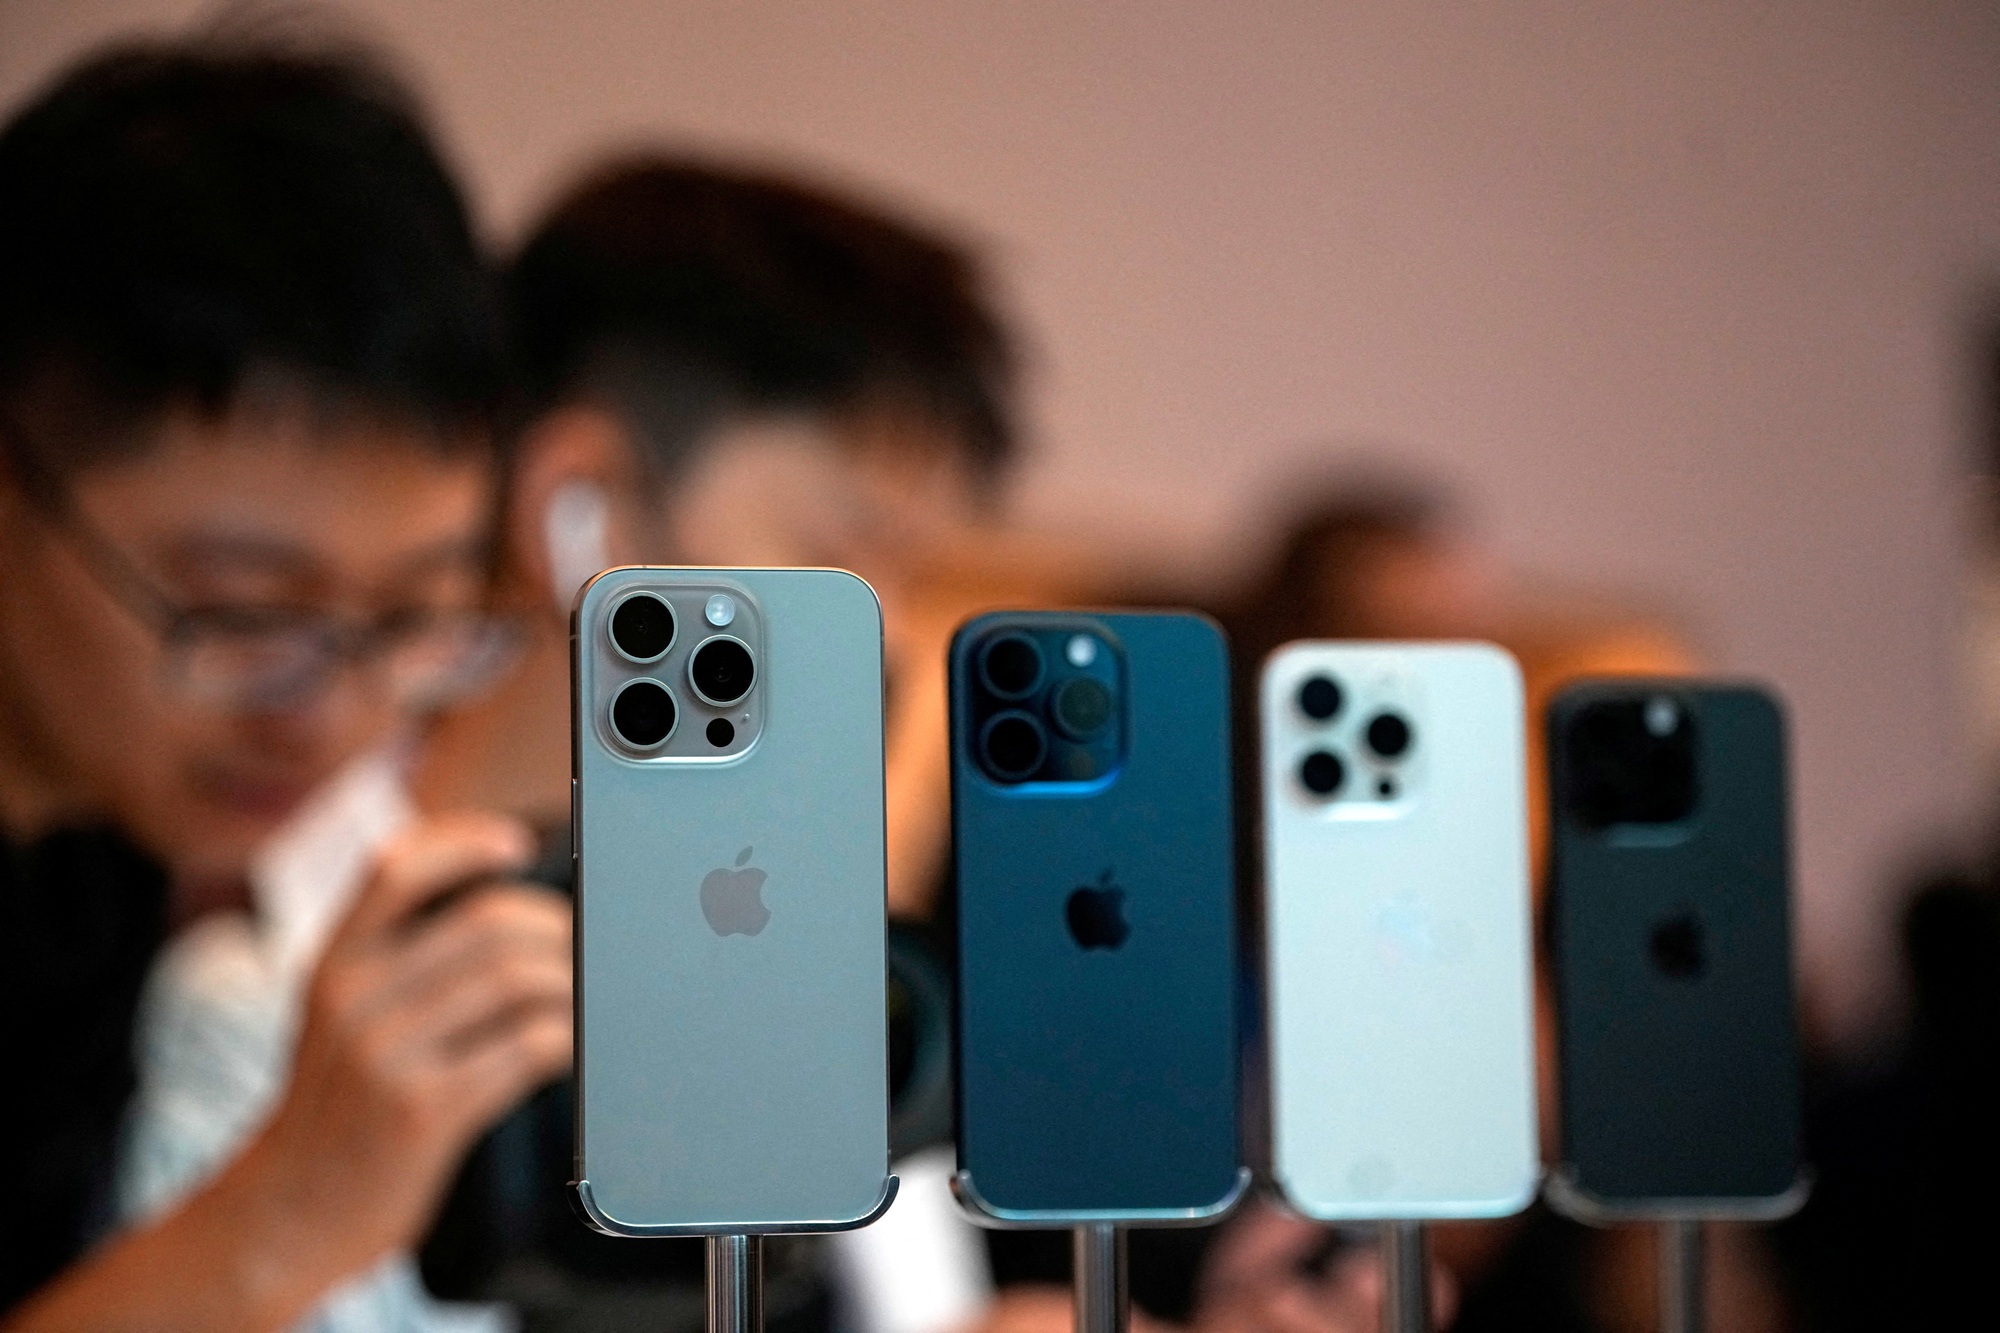 Doanh số iPhone sụt giảm mạnh ở Trung Quốc, Apple thêm khó khăn- Ảnh 1.